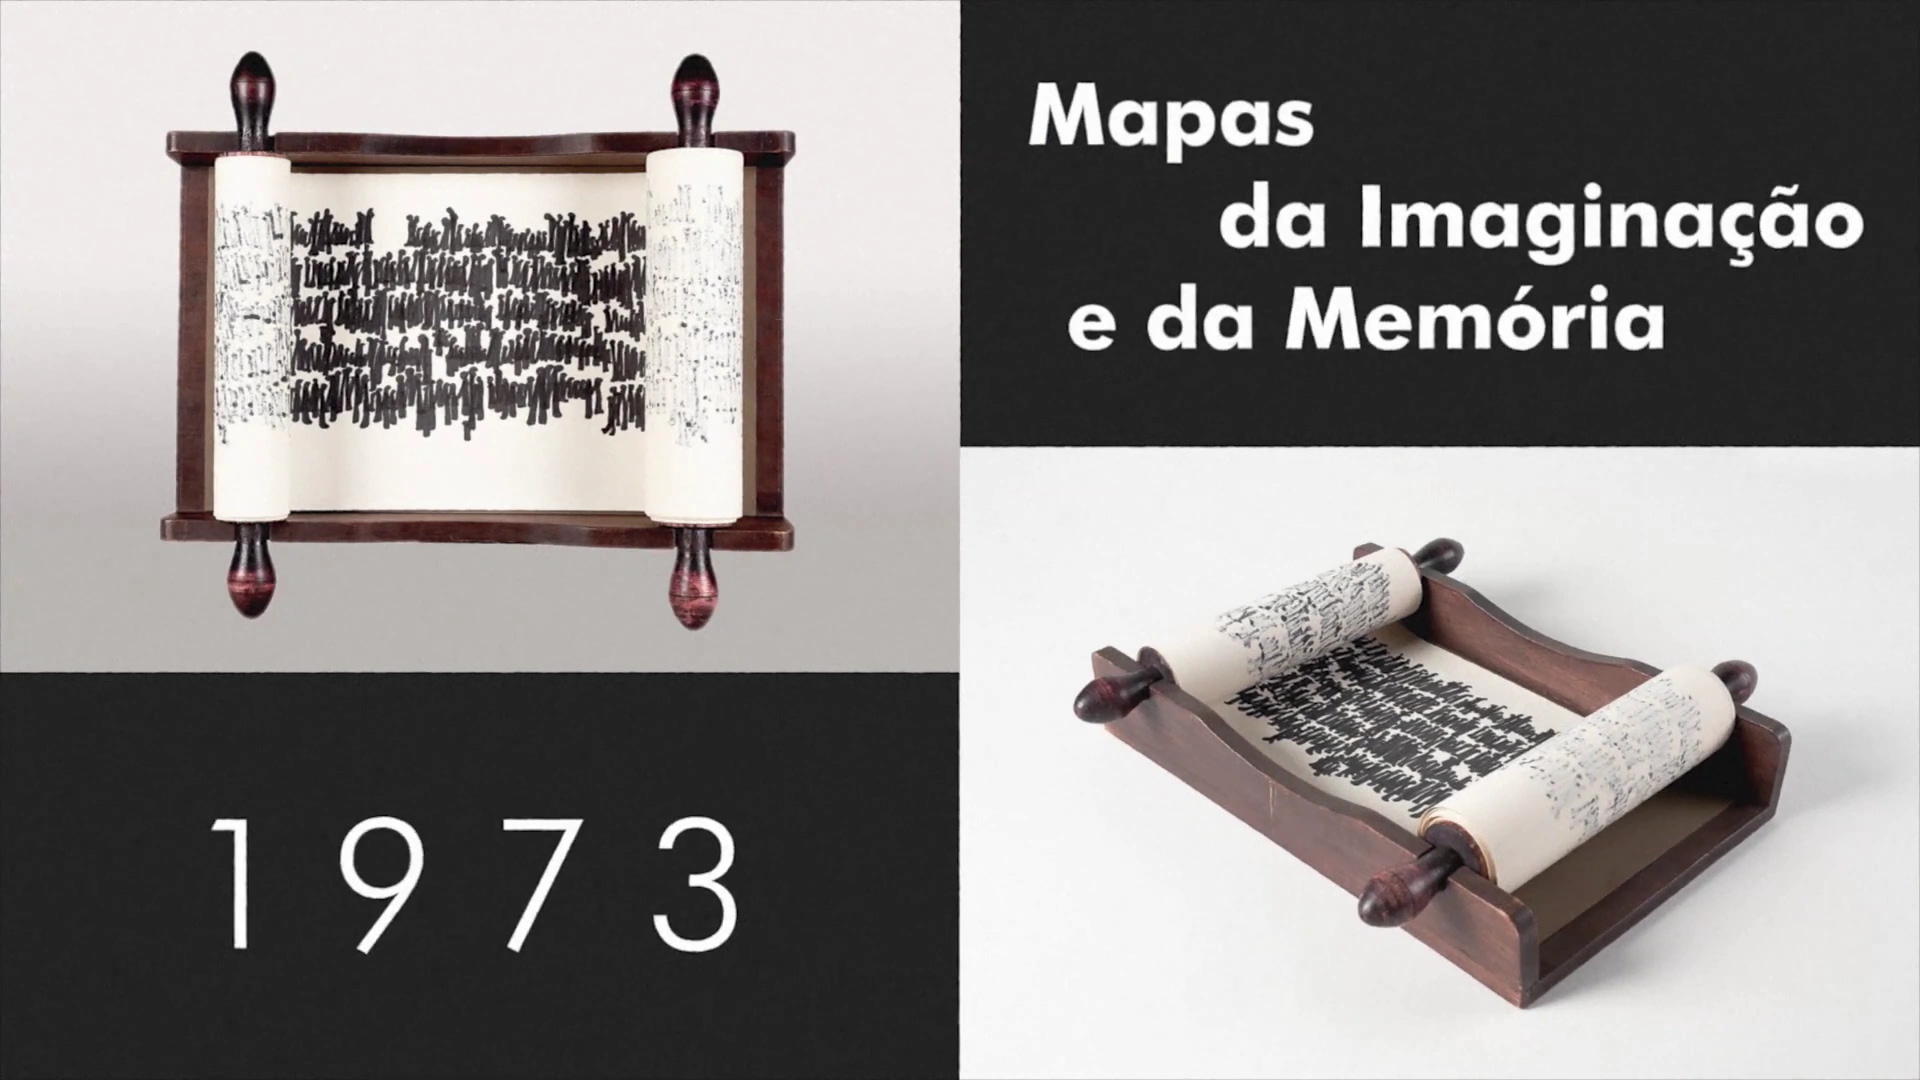 Image taken from the Ana Hatherly video showcasing one of her art pieces called "Mapas da Imaginação e da Memória" from 1973.